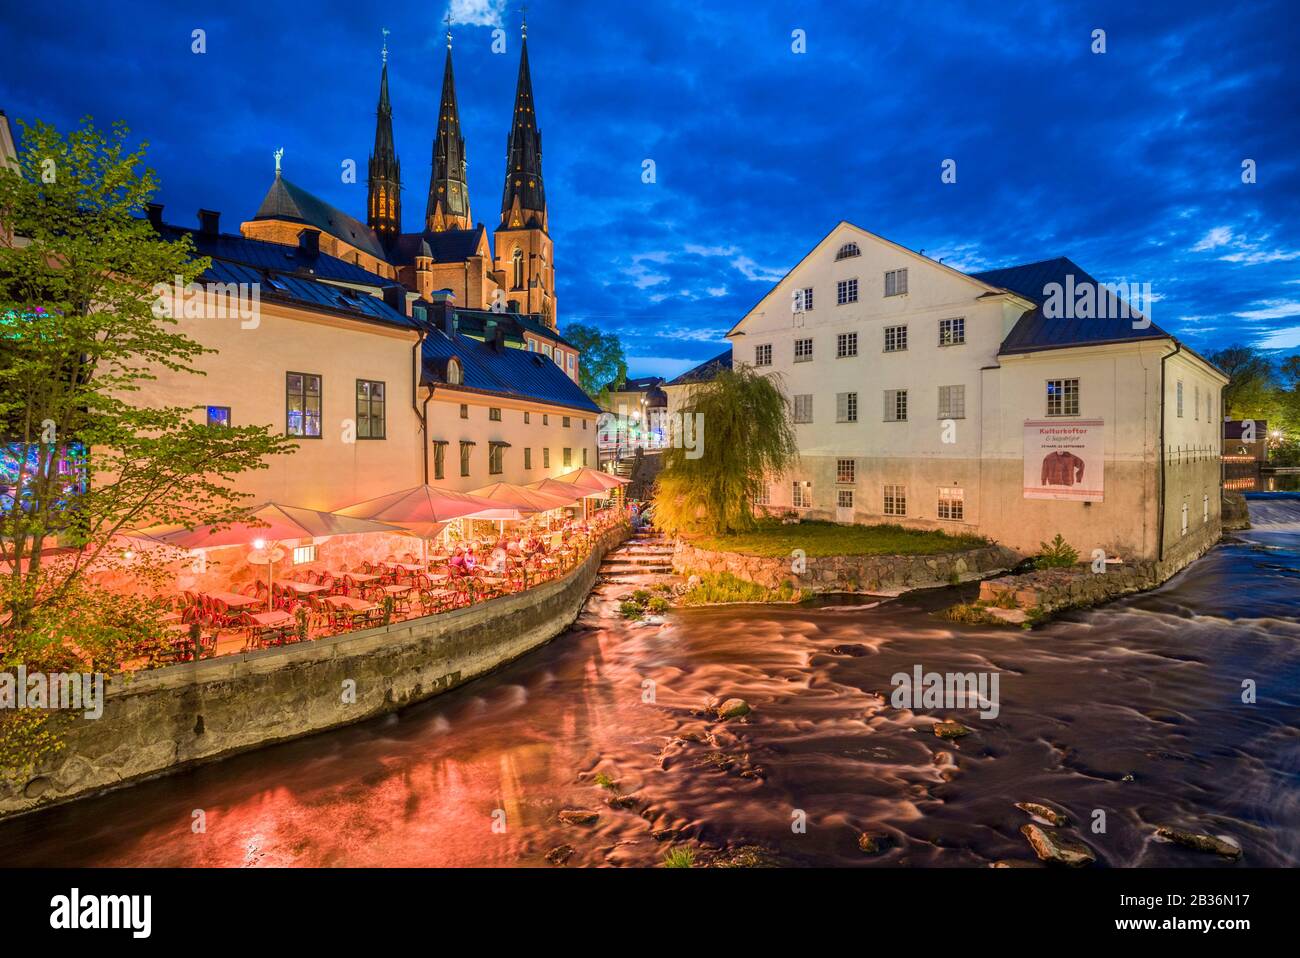 Sweden, Central Sweden, Uppsala, Domkyrka Cathedral with riverfront cafe, dusk Stock Photo